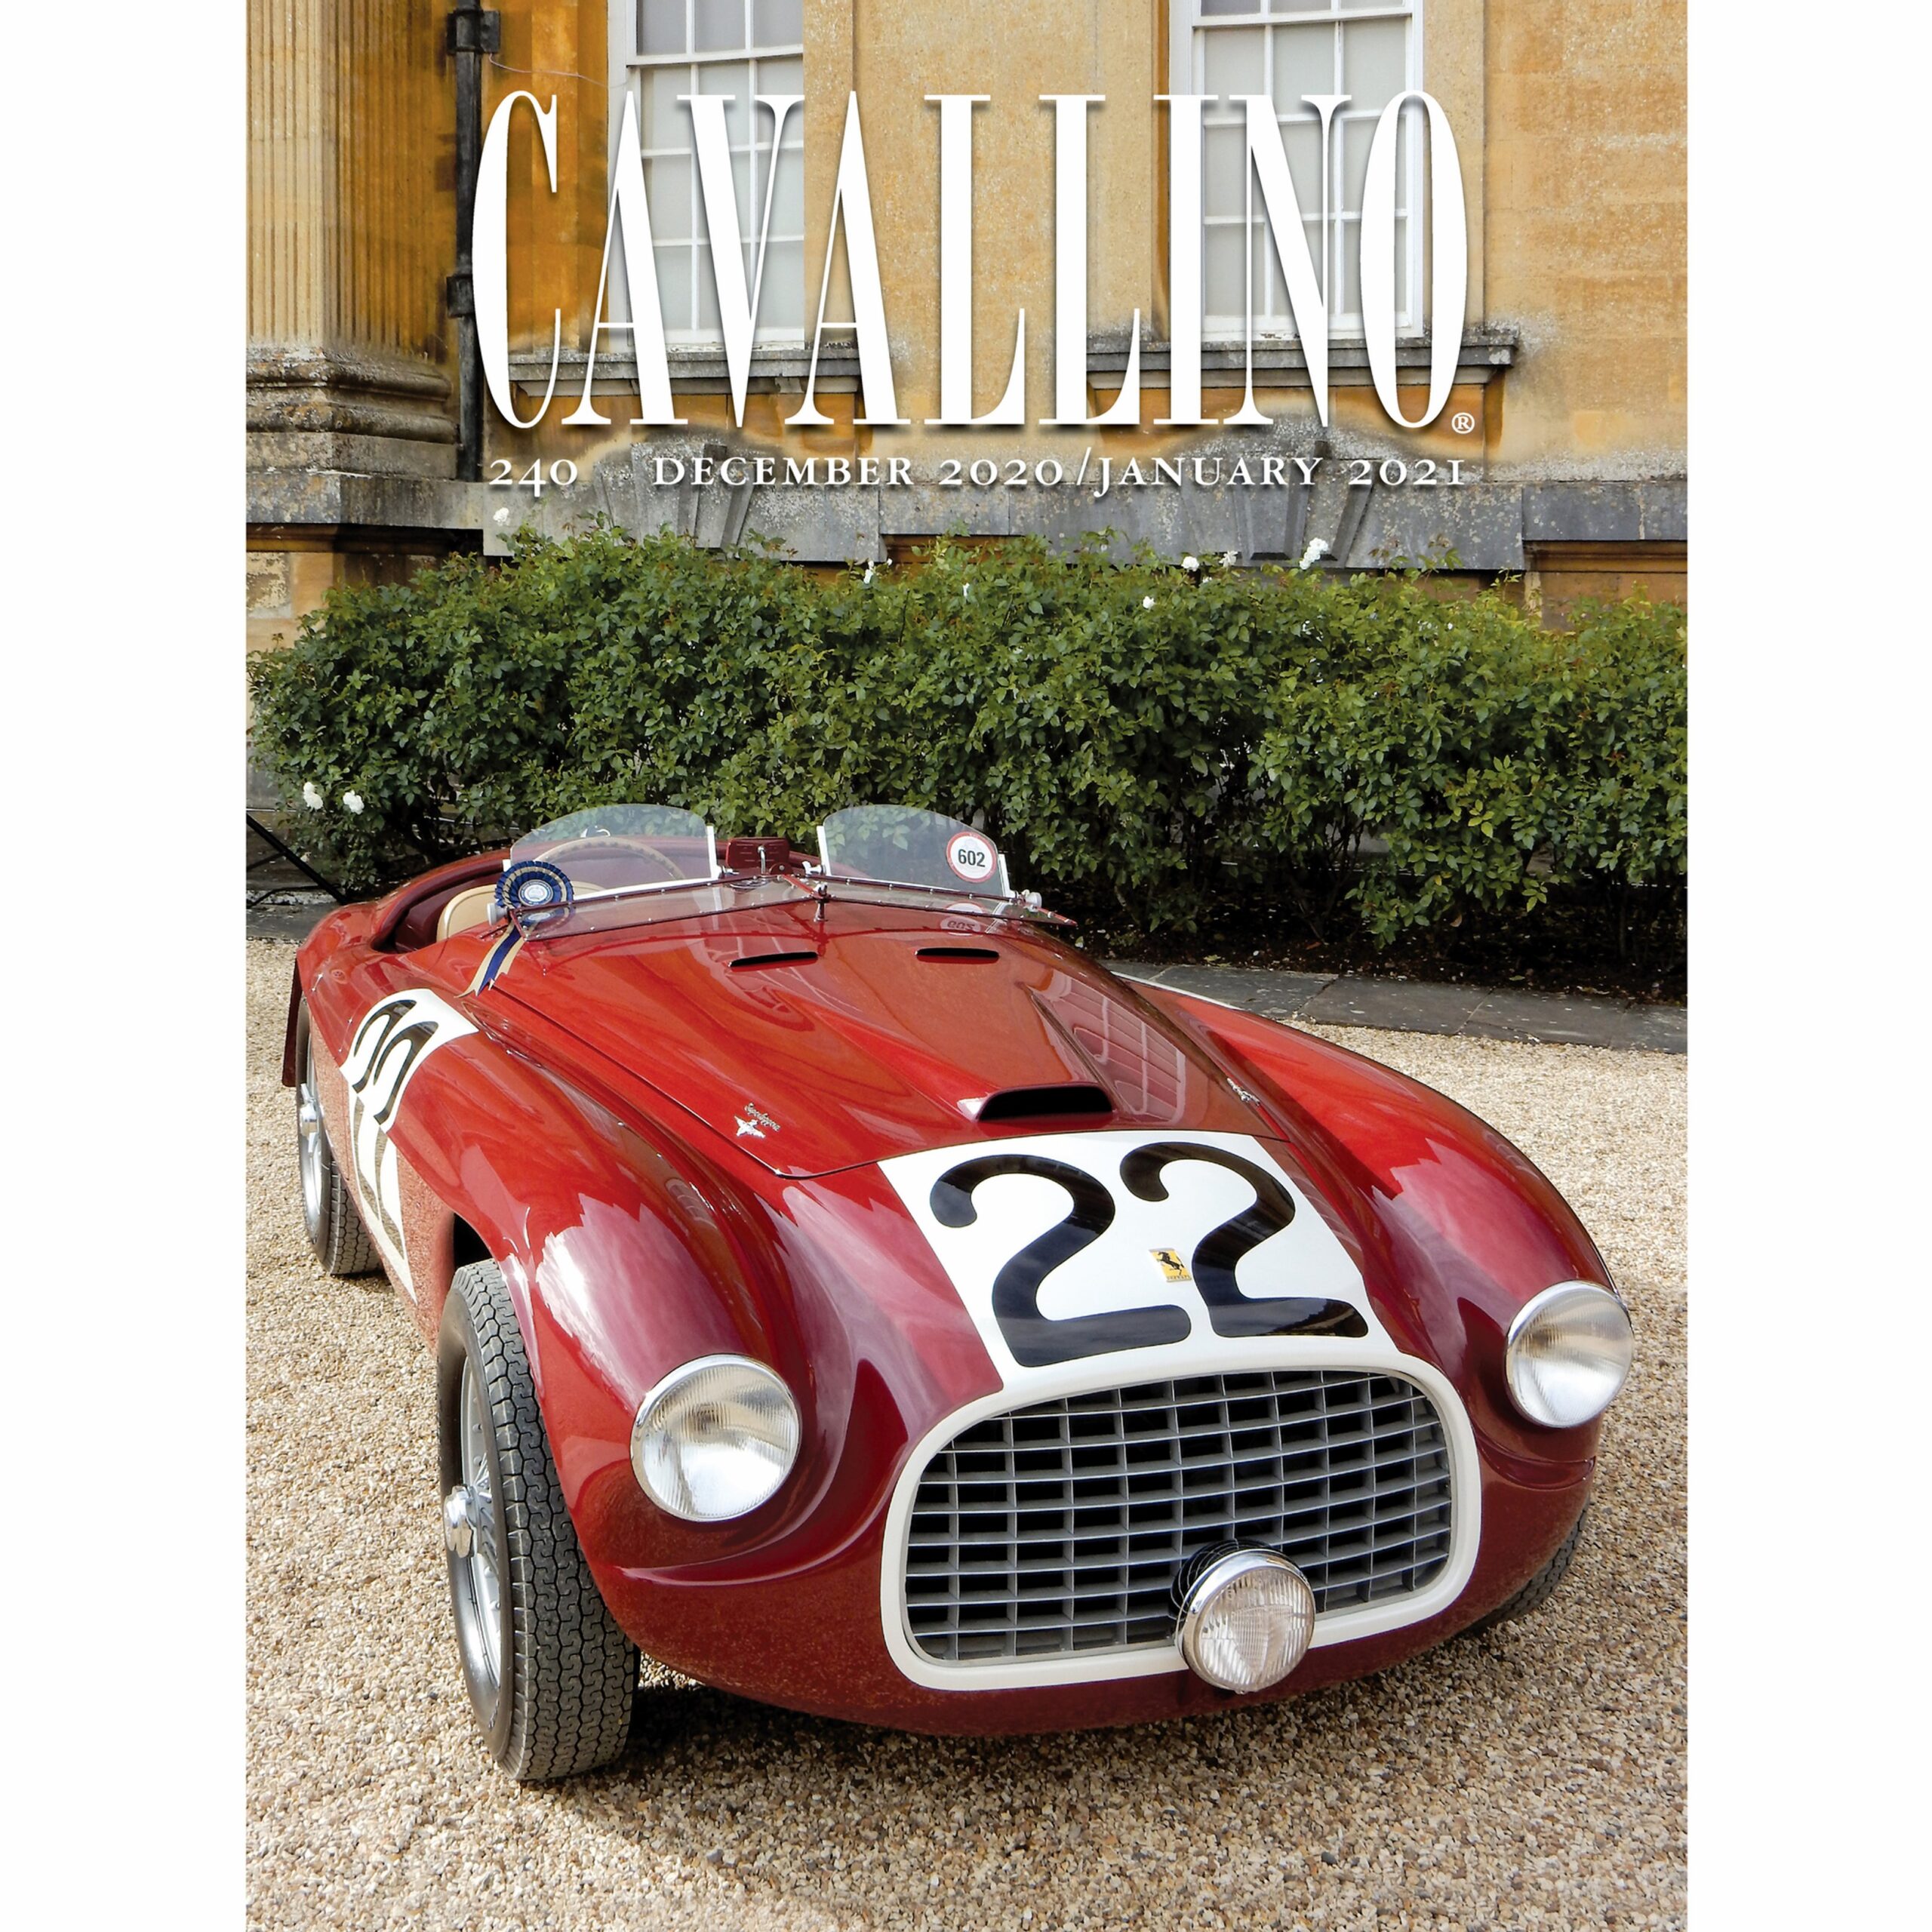 Ferrari Cavallino Magazine Issue 240 - December 2020 / January 2021 - Maranello Collection